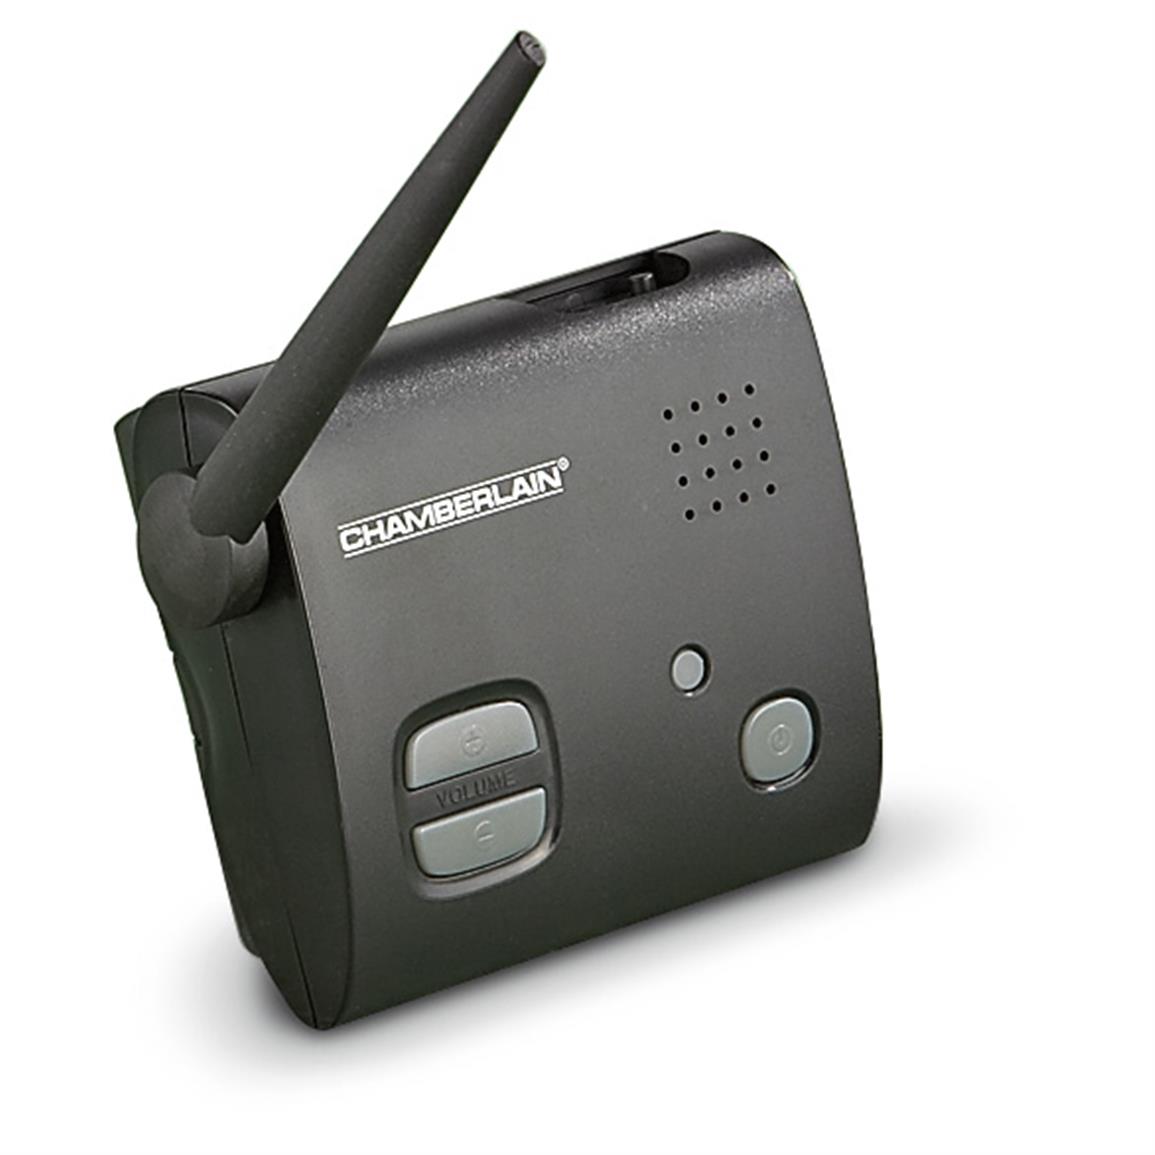 Chamberlain Wireless Motion Alert System, Model CWA2000